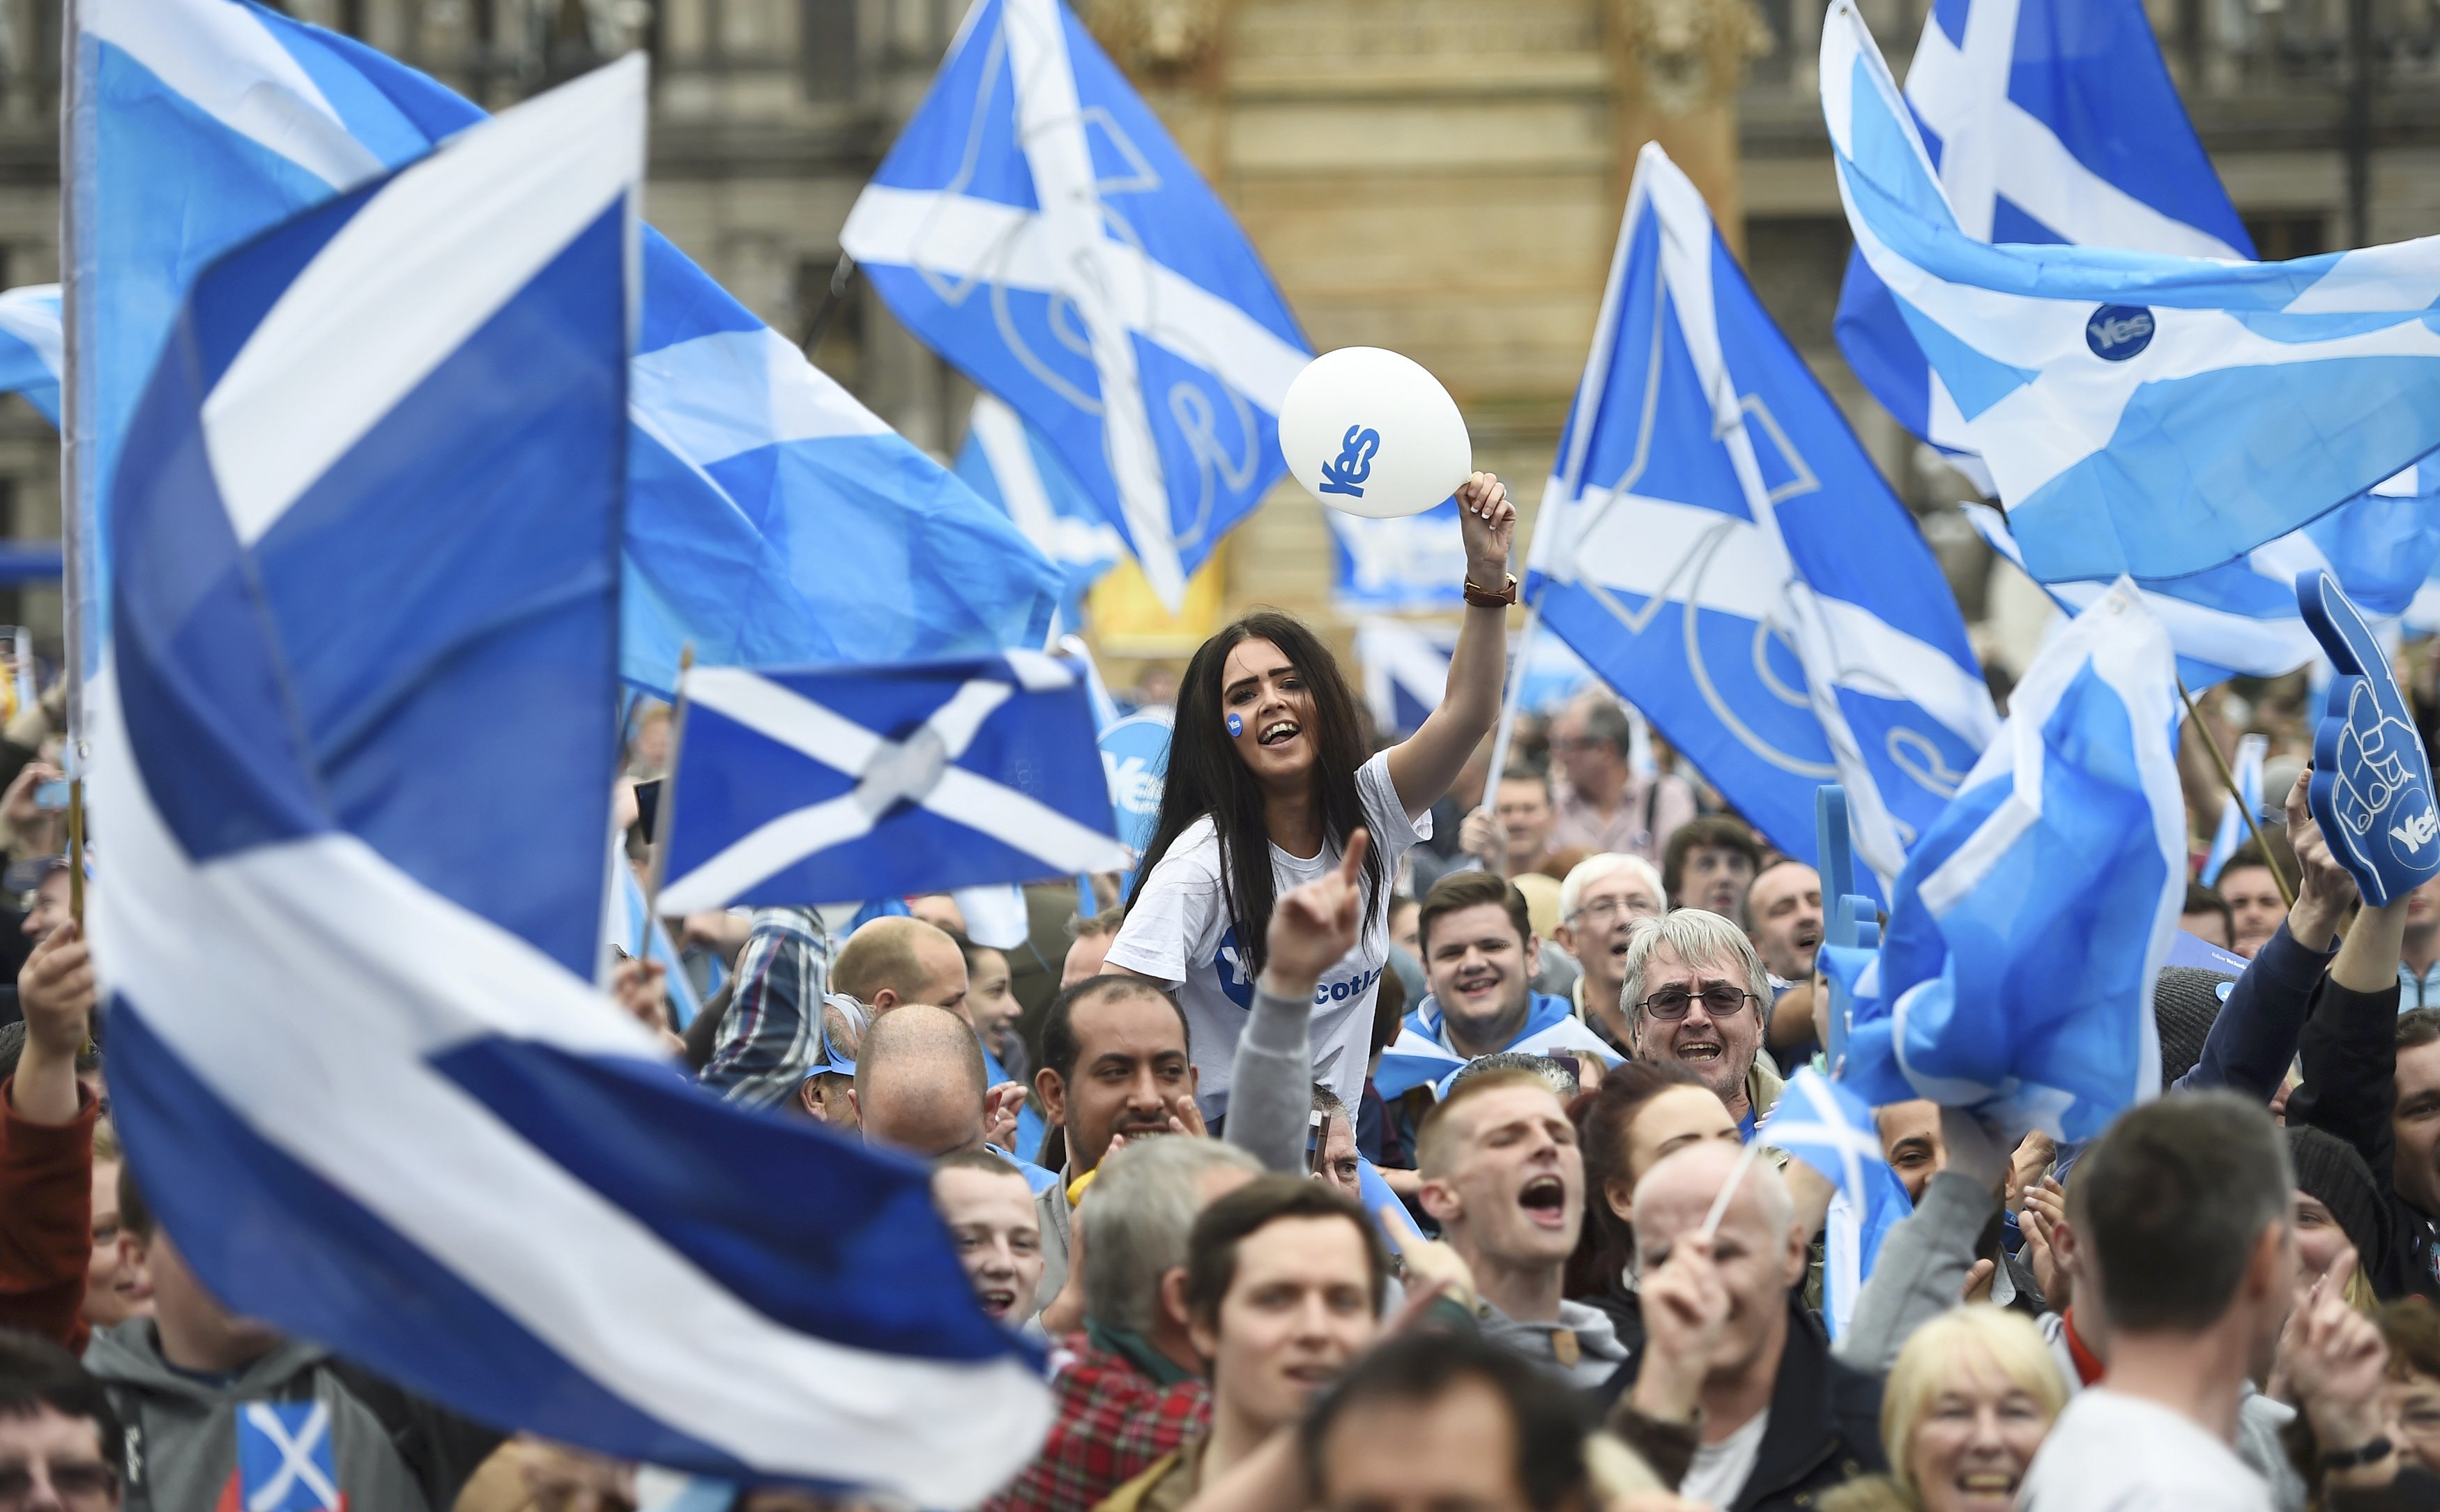 People live in scotland. Референдум о независимости Шотландии. Референдум о независимости Шотландии 2014. Референдум о независимости Шотландии 2021. Шотландия референдум о независимости 2022 год.